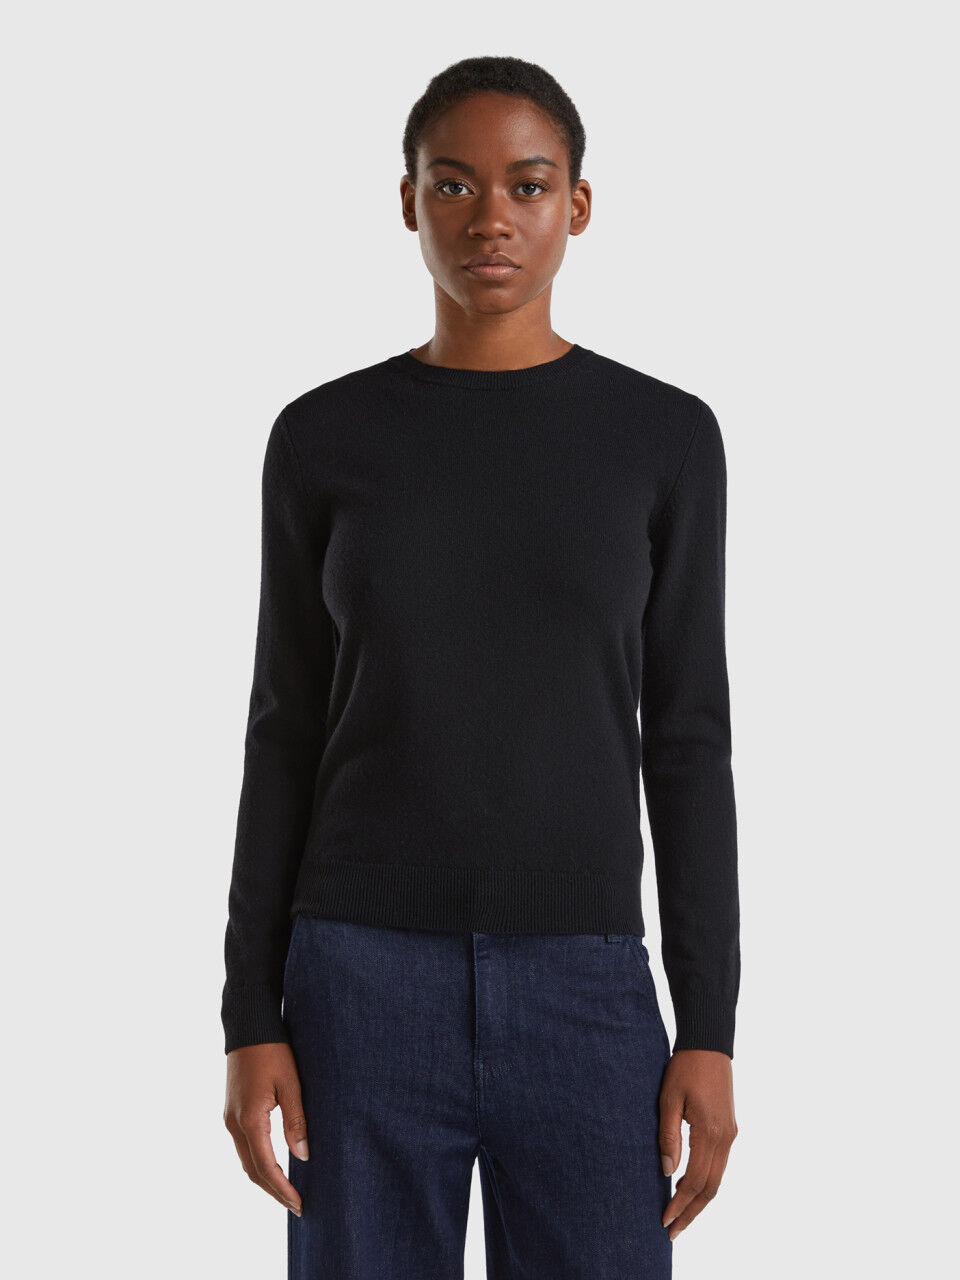 Maglietta da donna 135 gr a maniche lunghe viola Woolona Kona 100% lana merinos 17,5 micron grigio colore: nero 